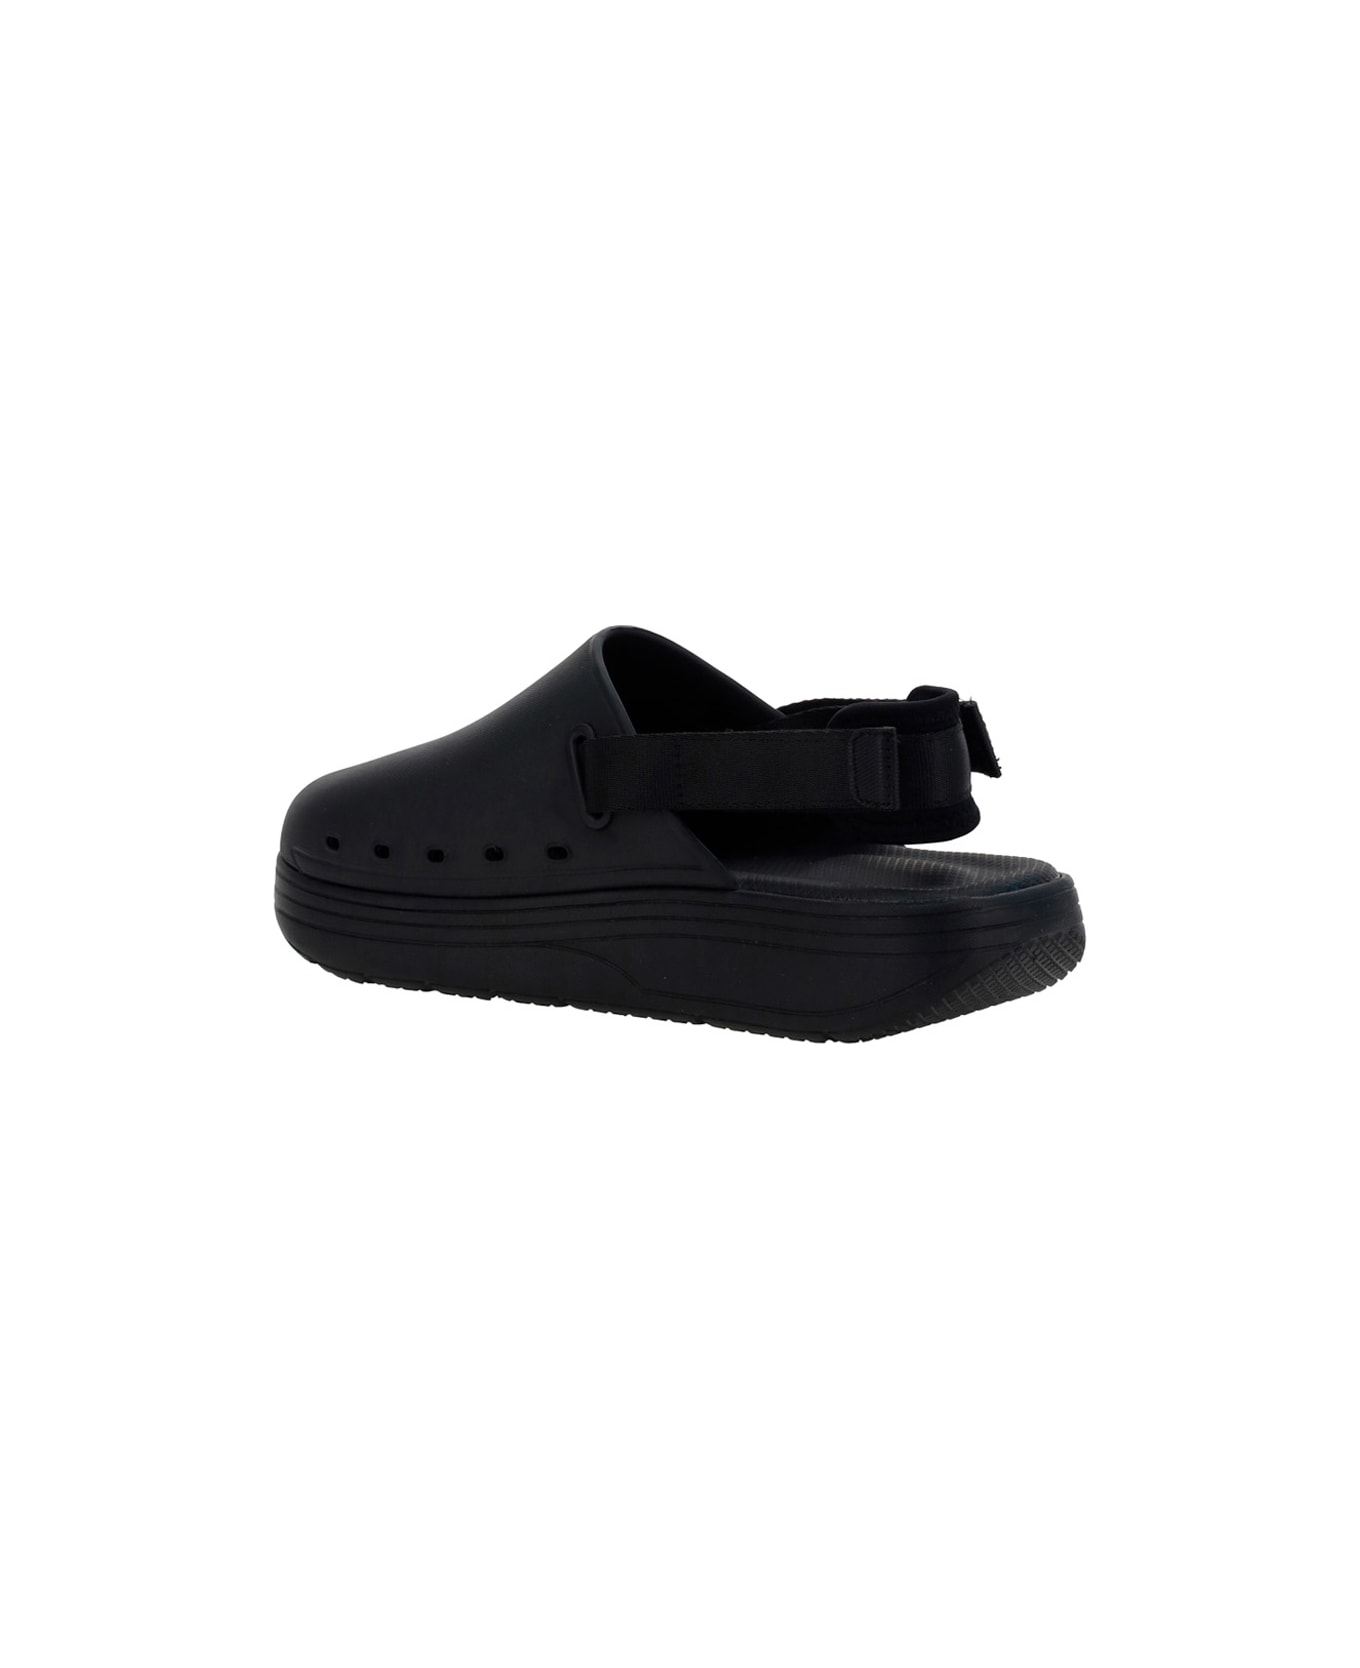 SUICOKE Cappo Sandals - Black フラットシューズ